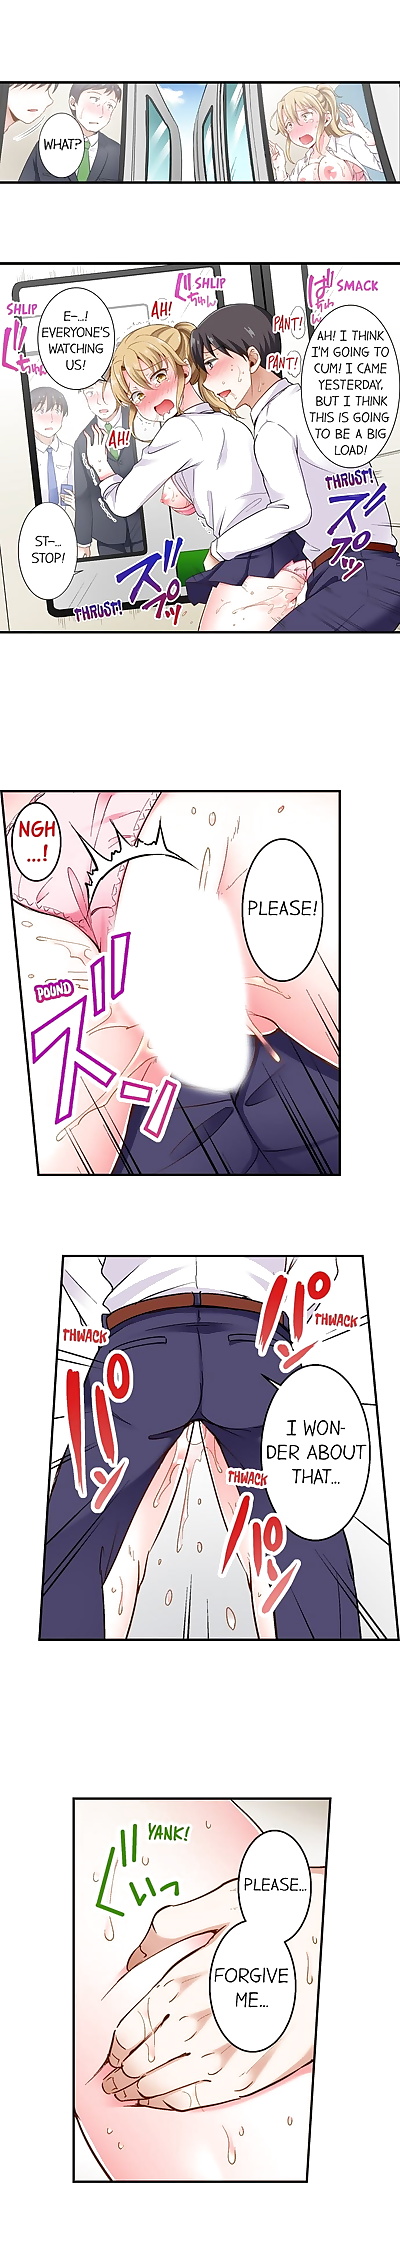 angielski manga w lvl 99 Dick - część 2, big breasts , full color 